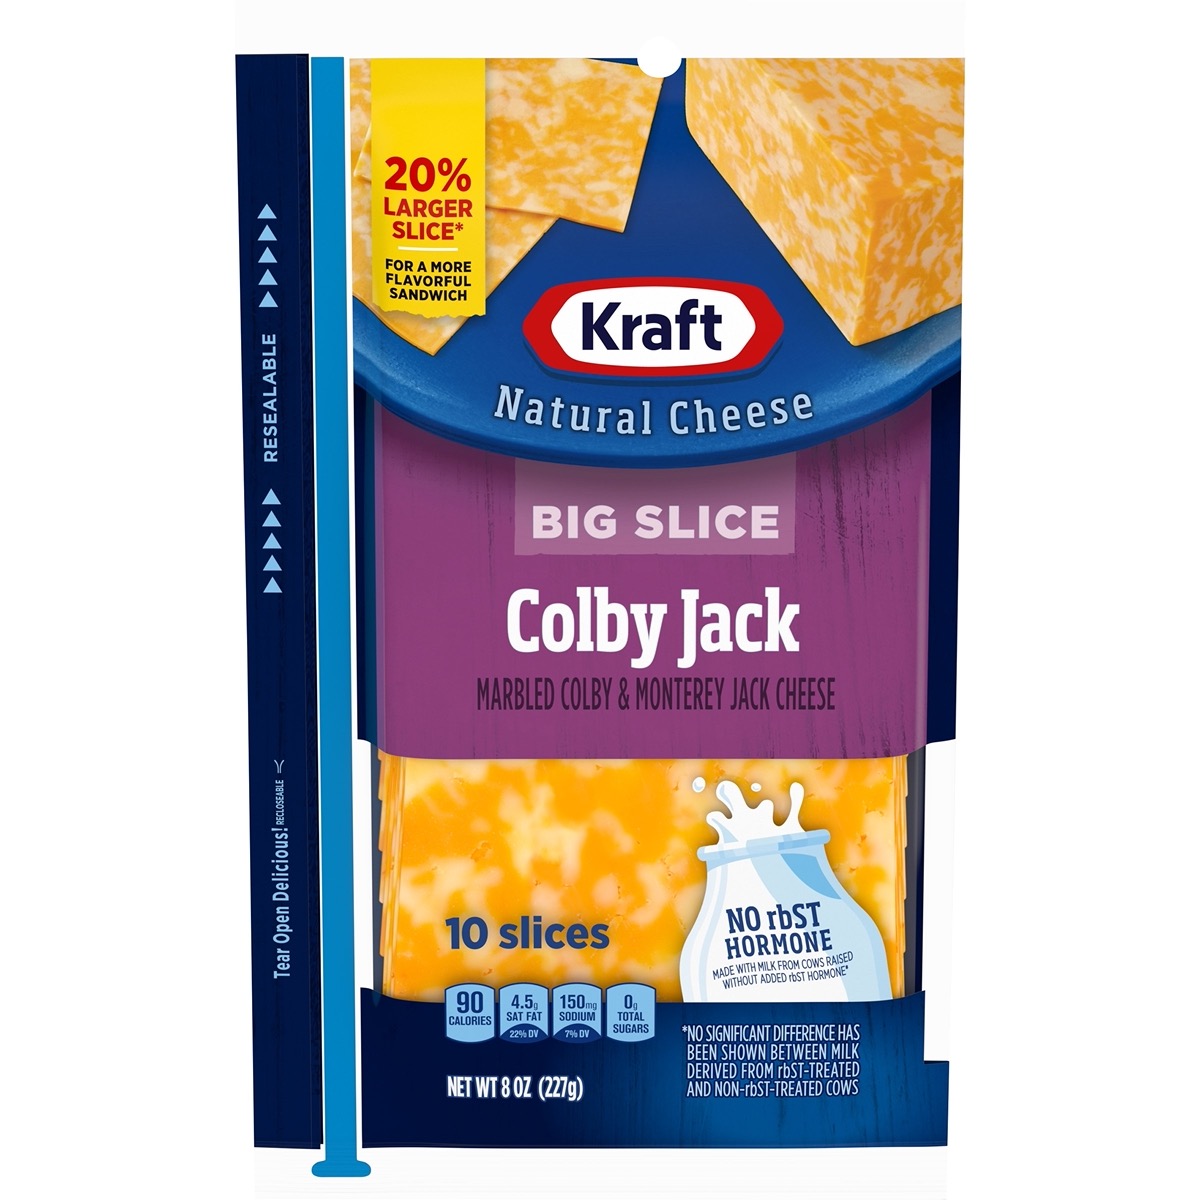 Natural Sliced Cheese - Kraft Natural Cheese